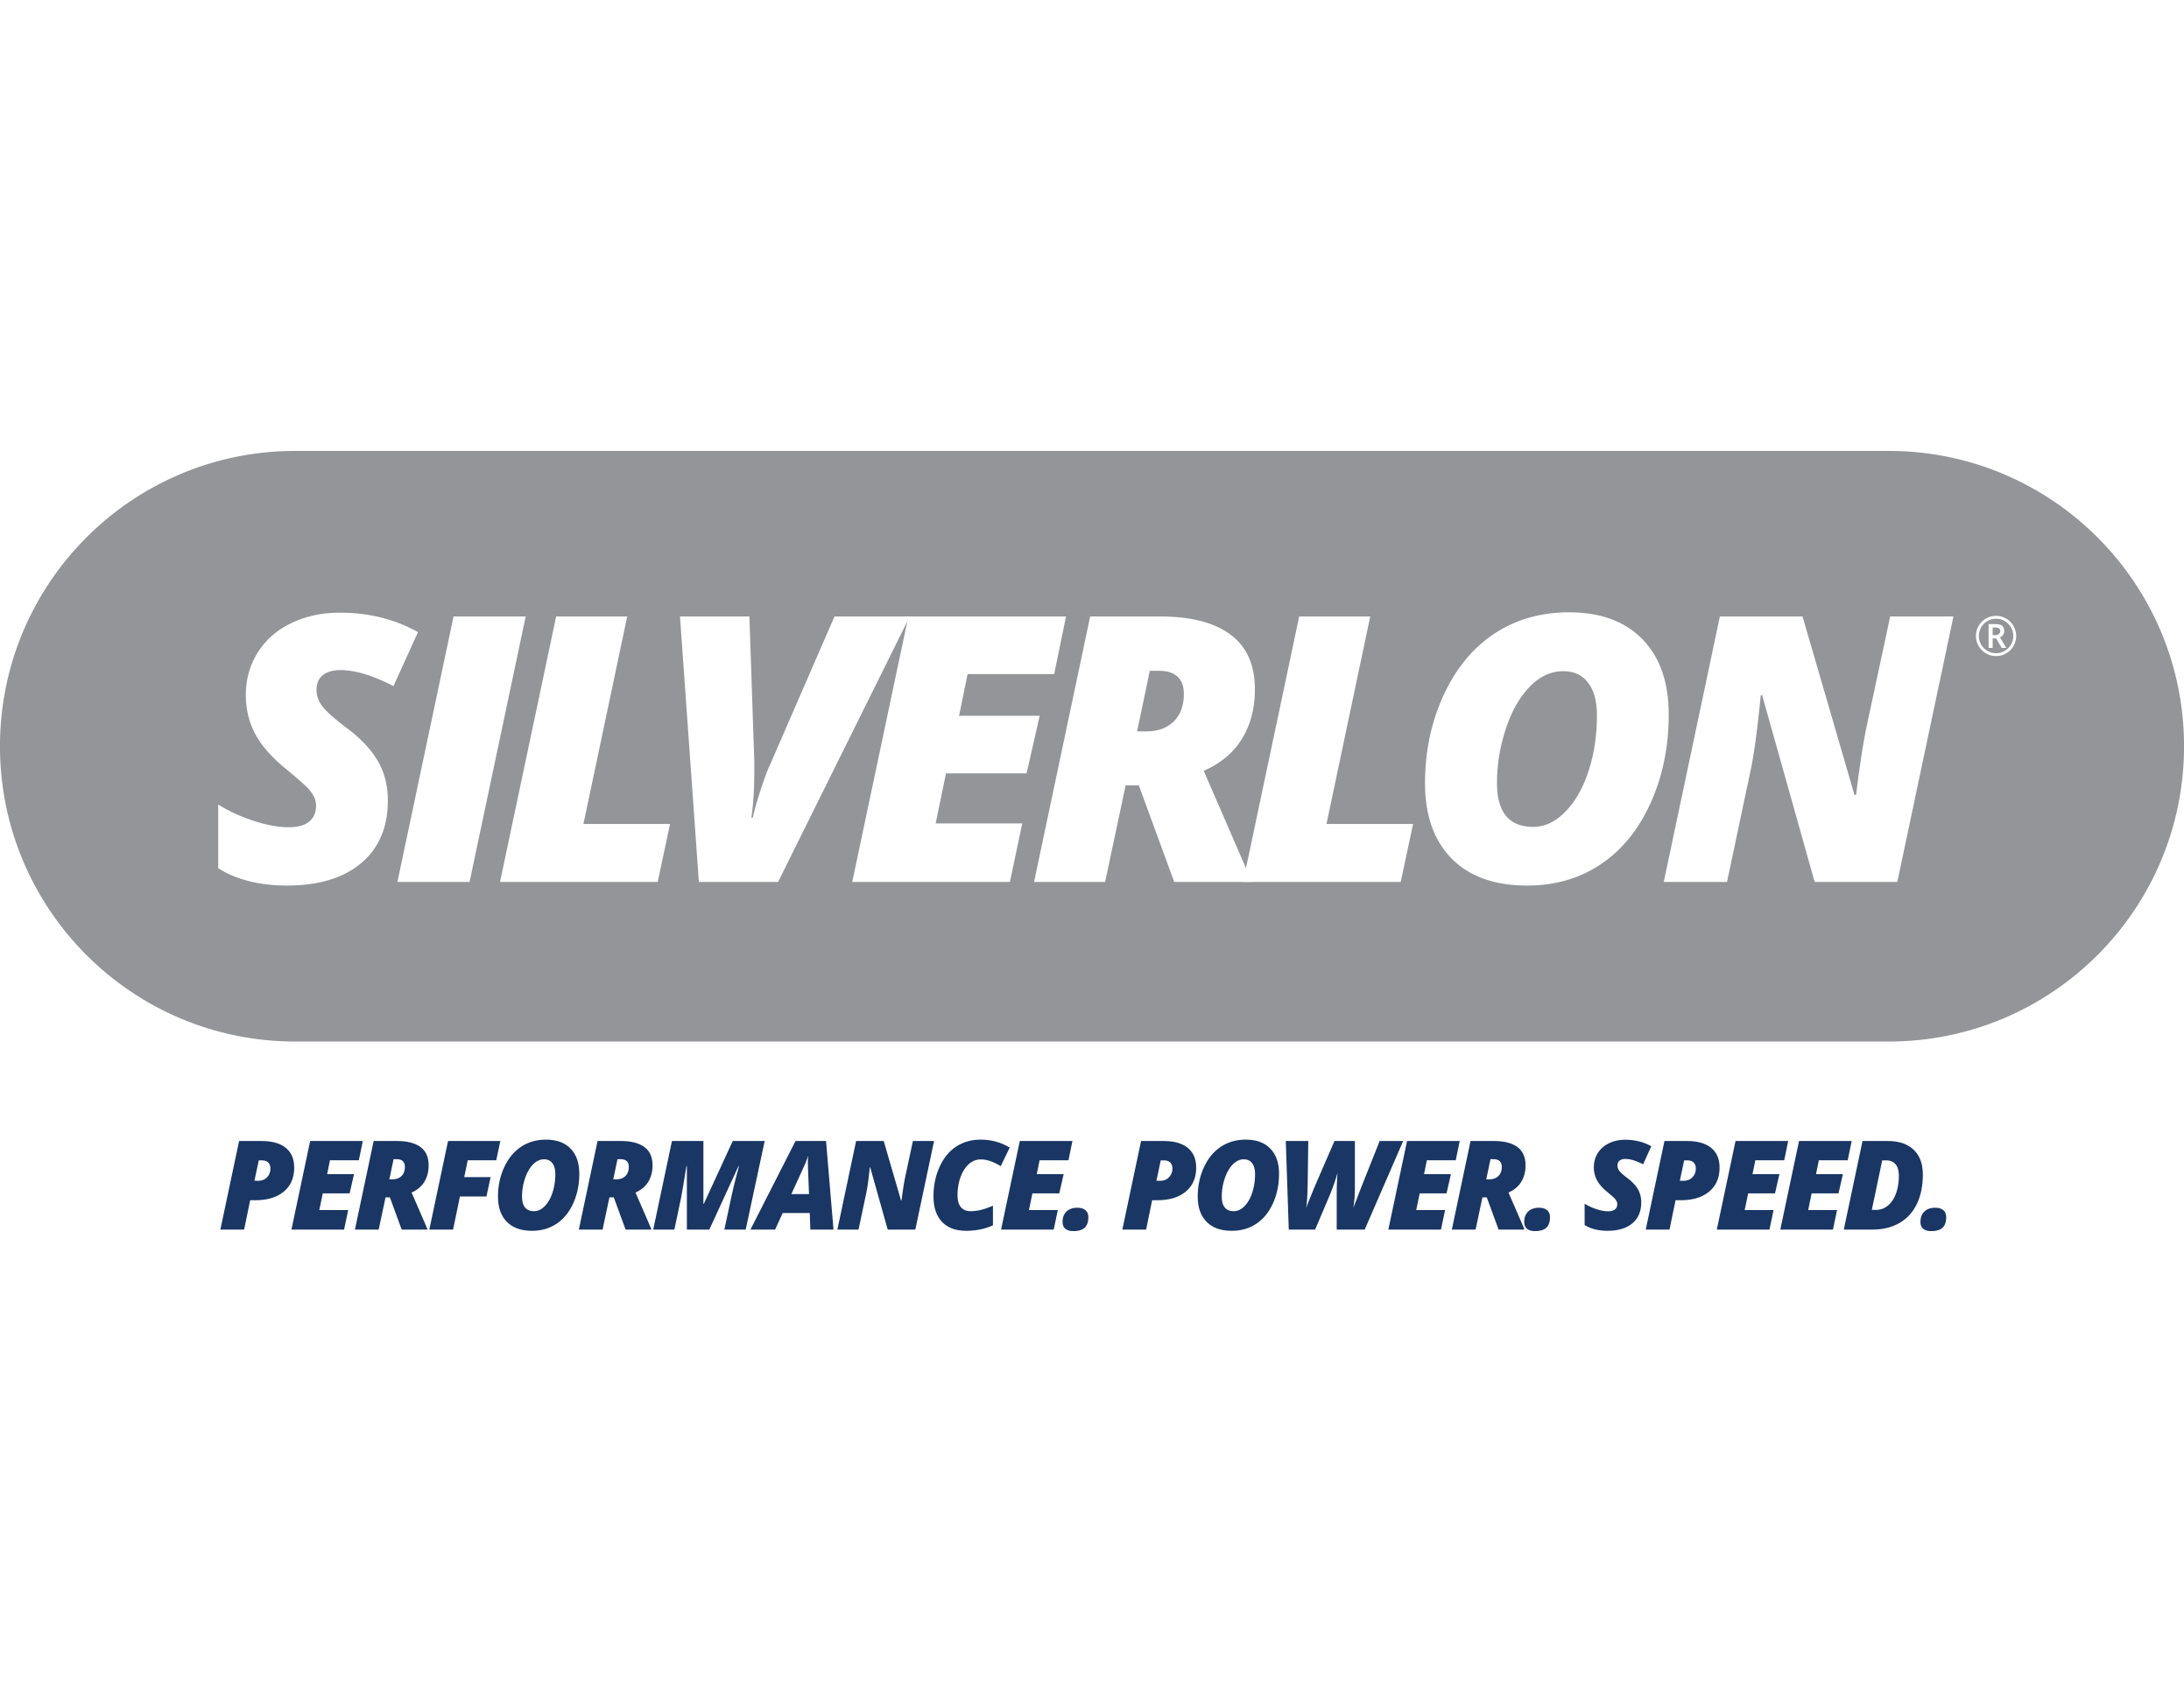 Silverlon